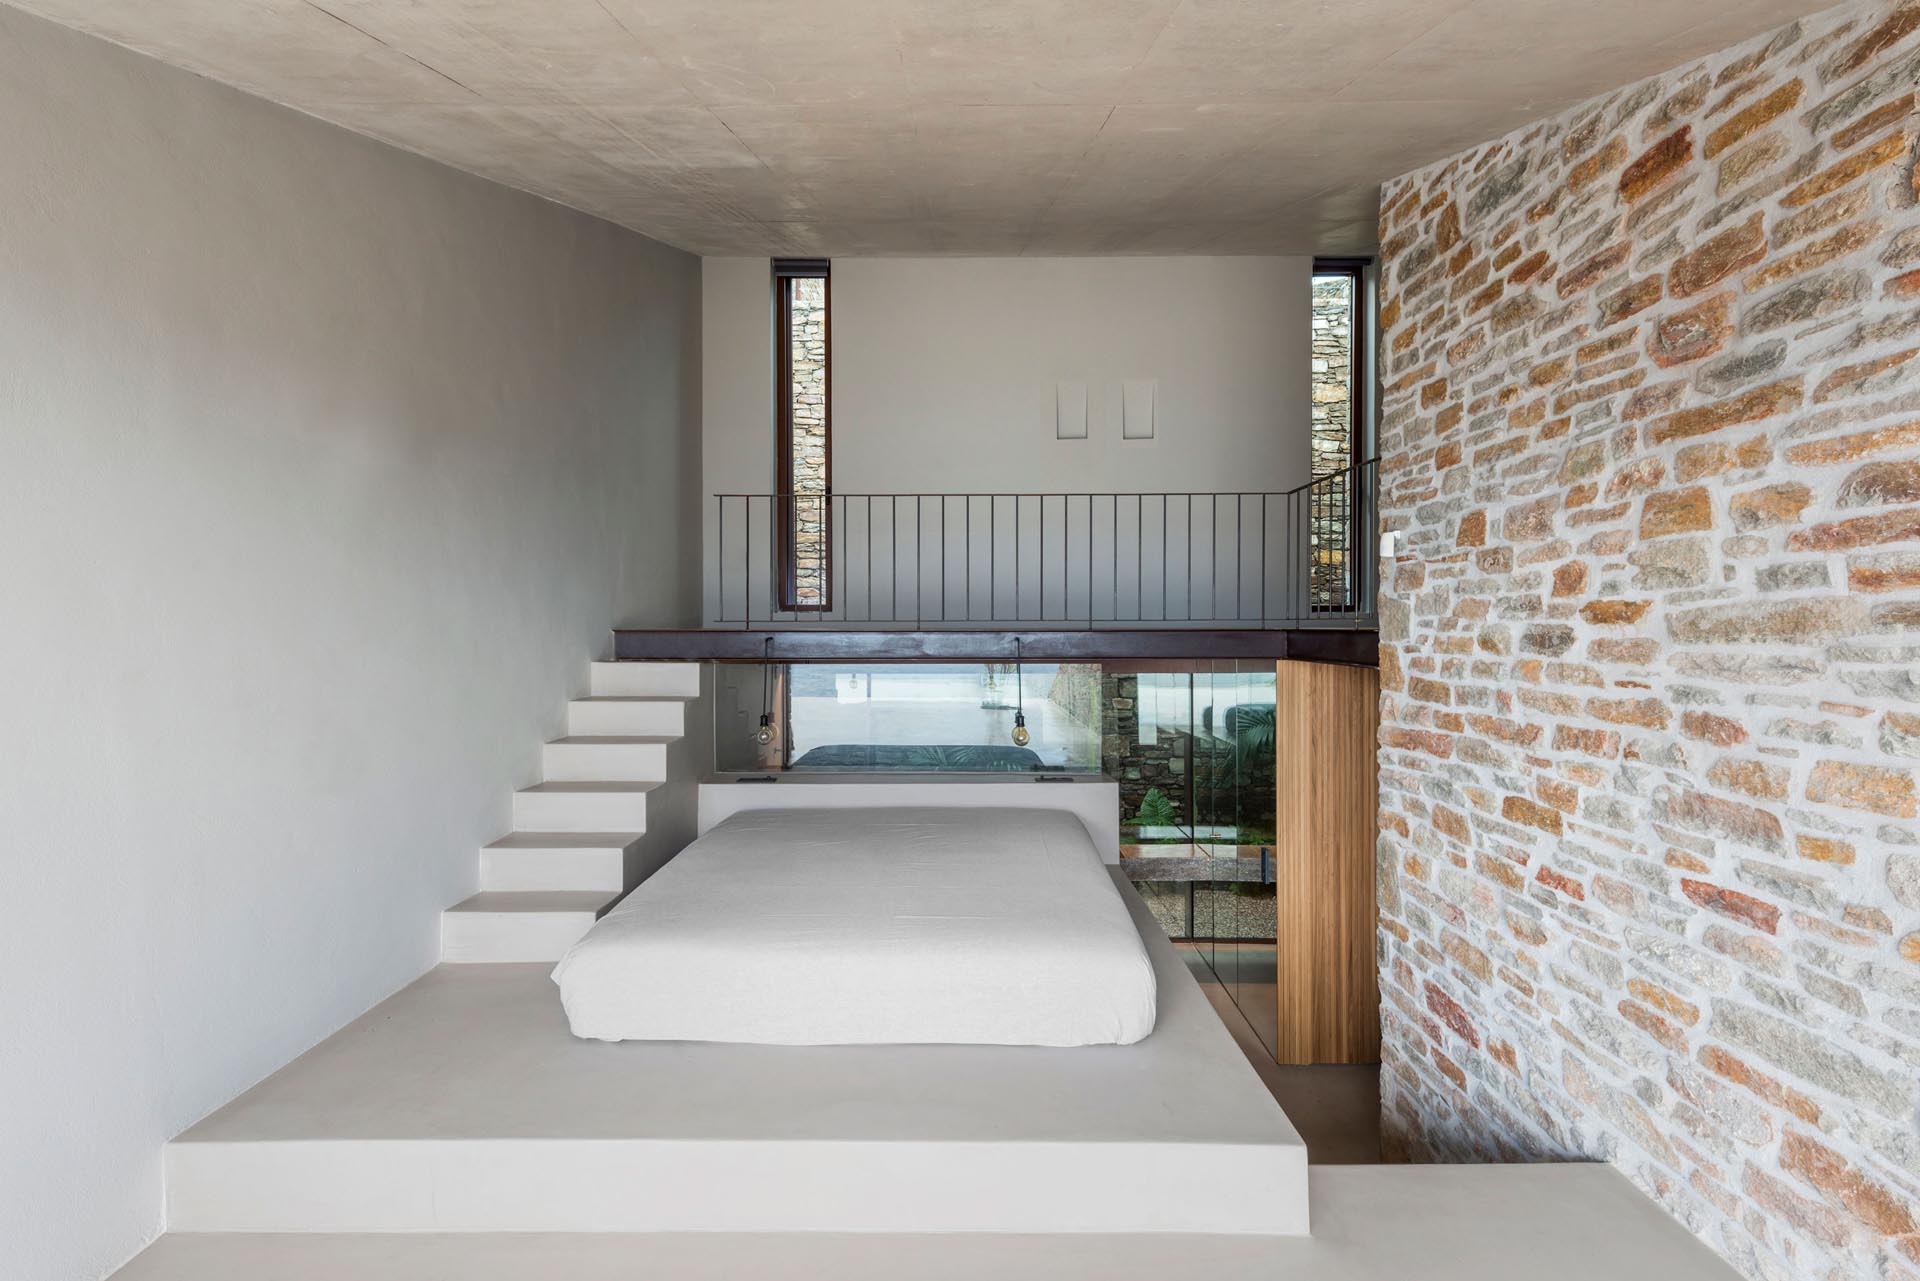 Спальня в стиле минимализма с кроватью, приподнятой на платформе, откуда открывается вид на воду.